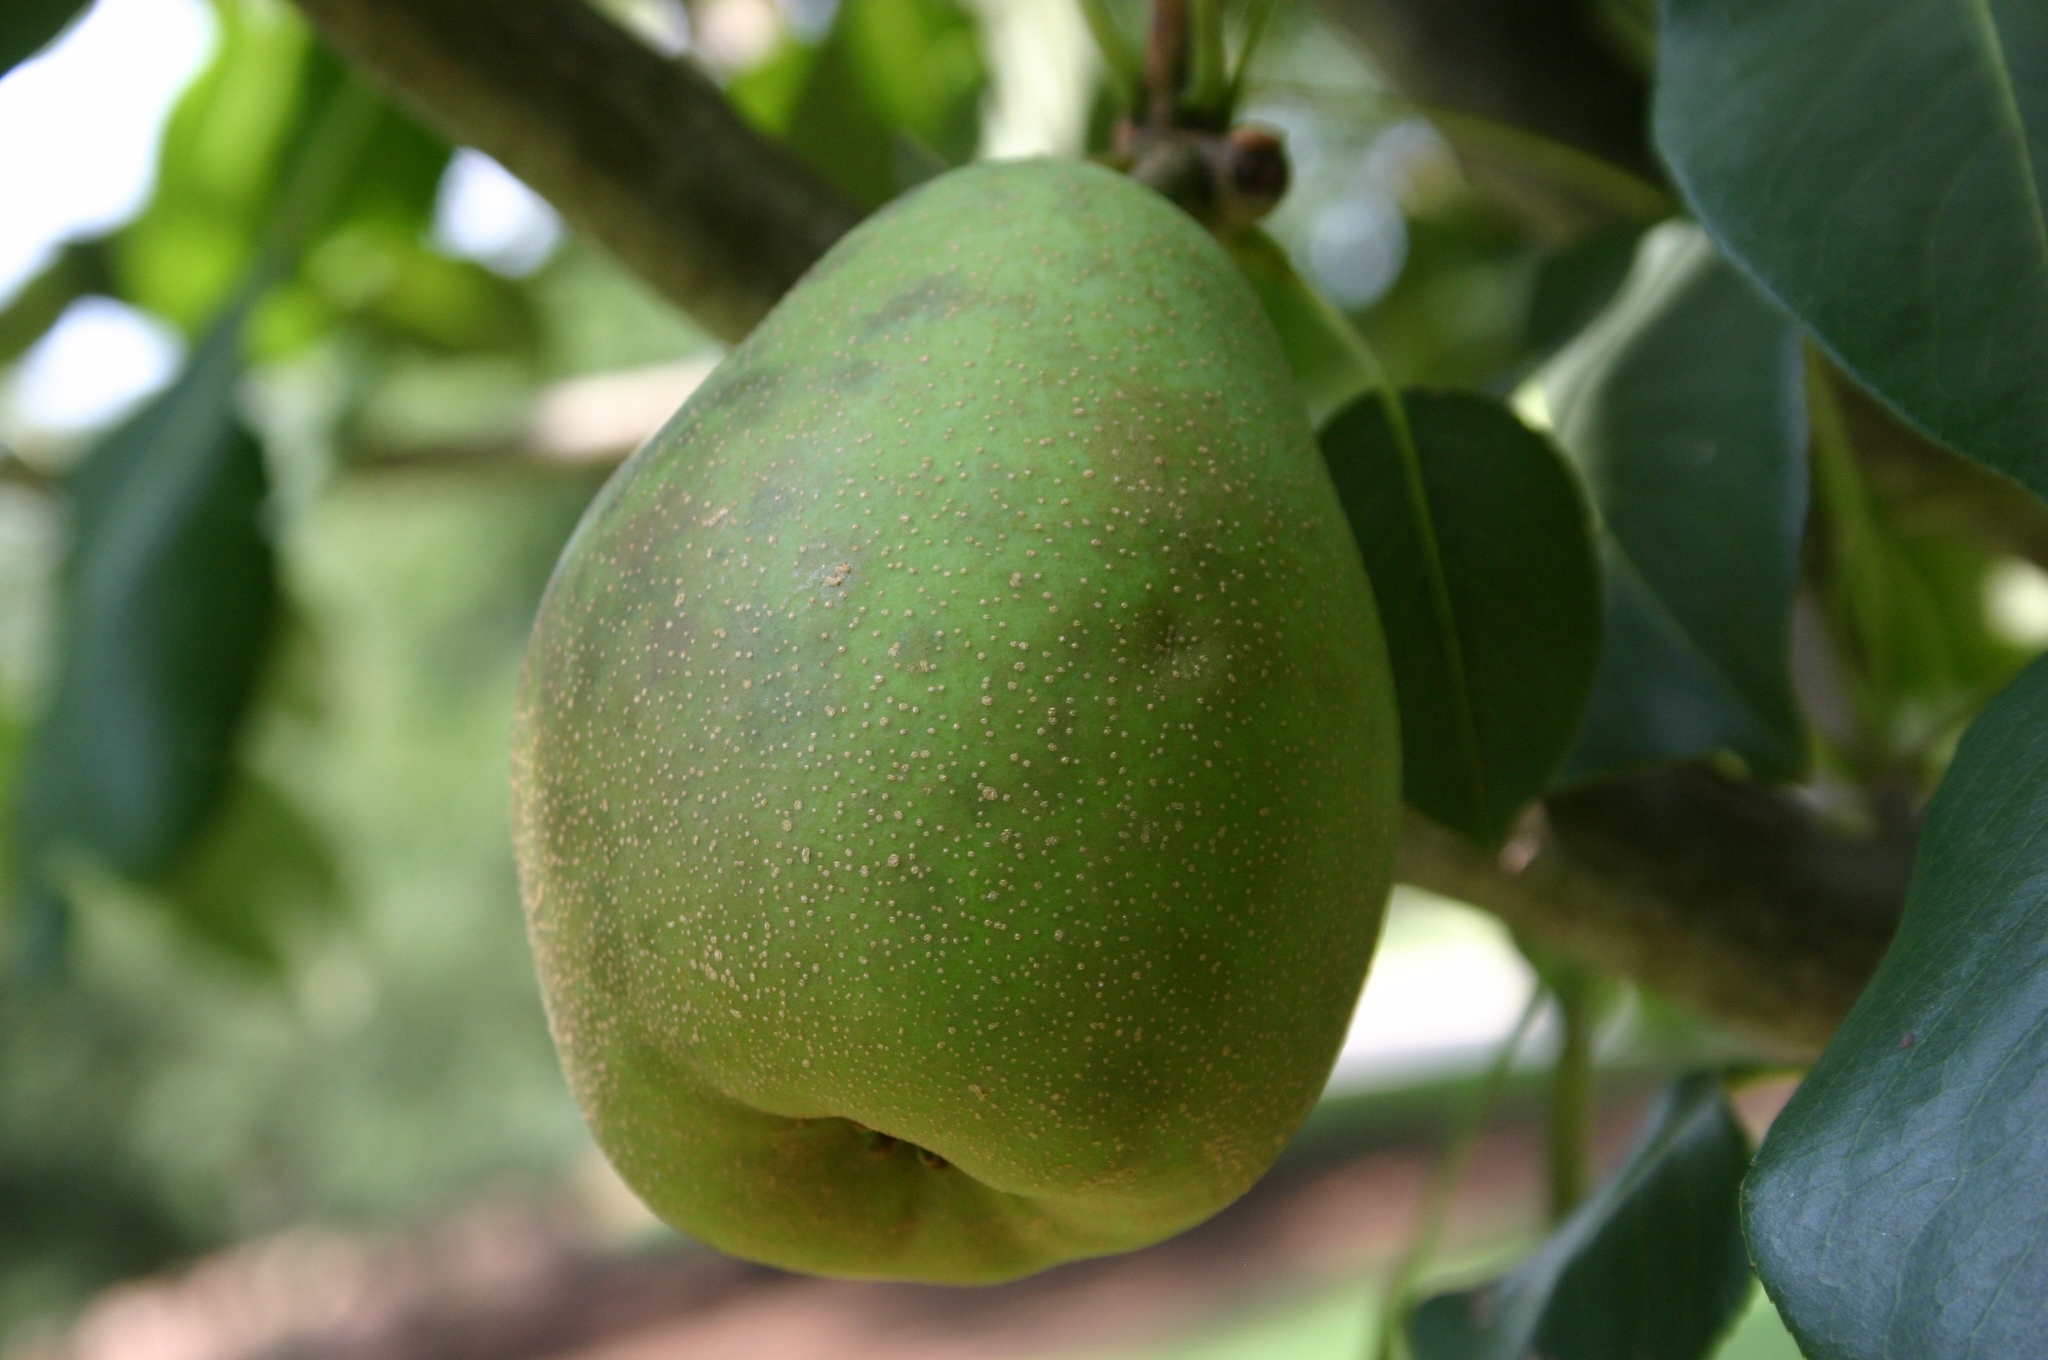 Identifying Pear Varieties